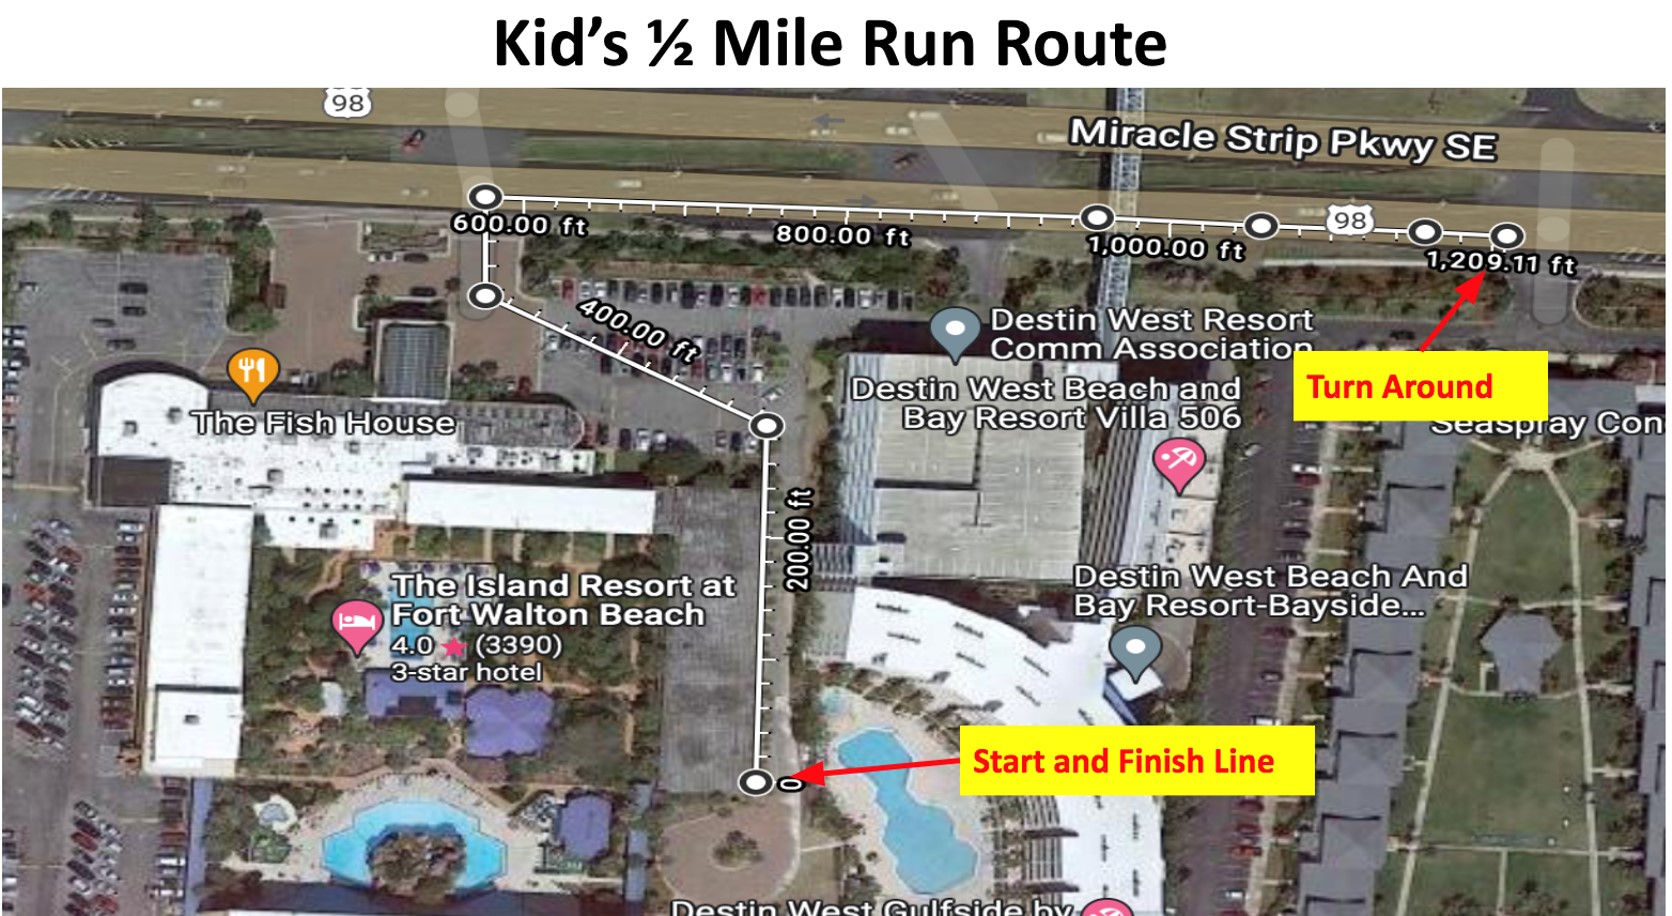 Half Mile Kids Fun Run